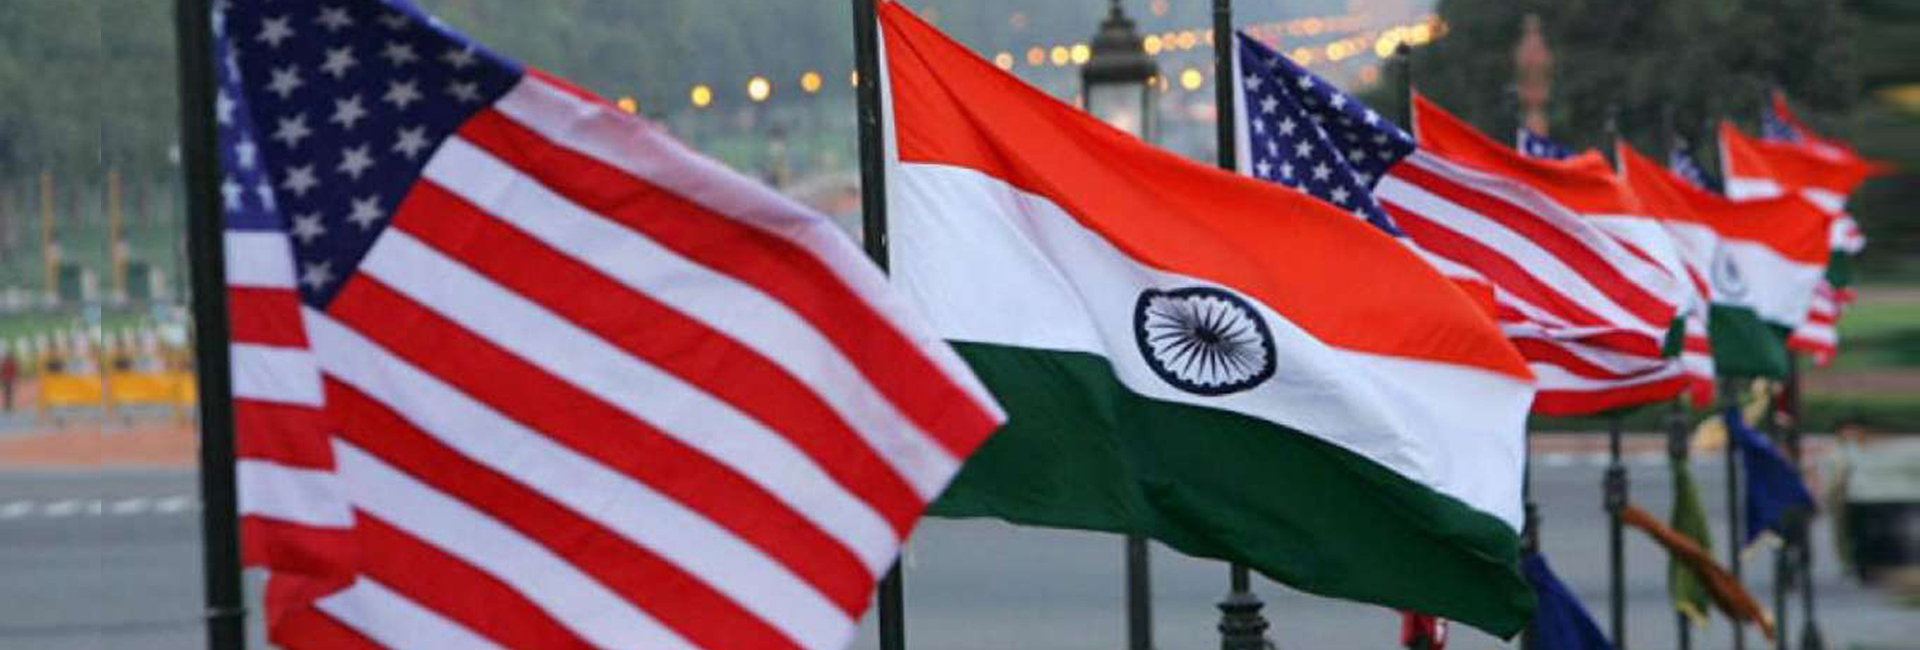 Ontmoet de Indiaas-Amerikaanse politici die in de race zijn voor de tussentijdse verkiezingen in de VS in 2022